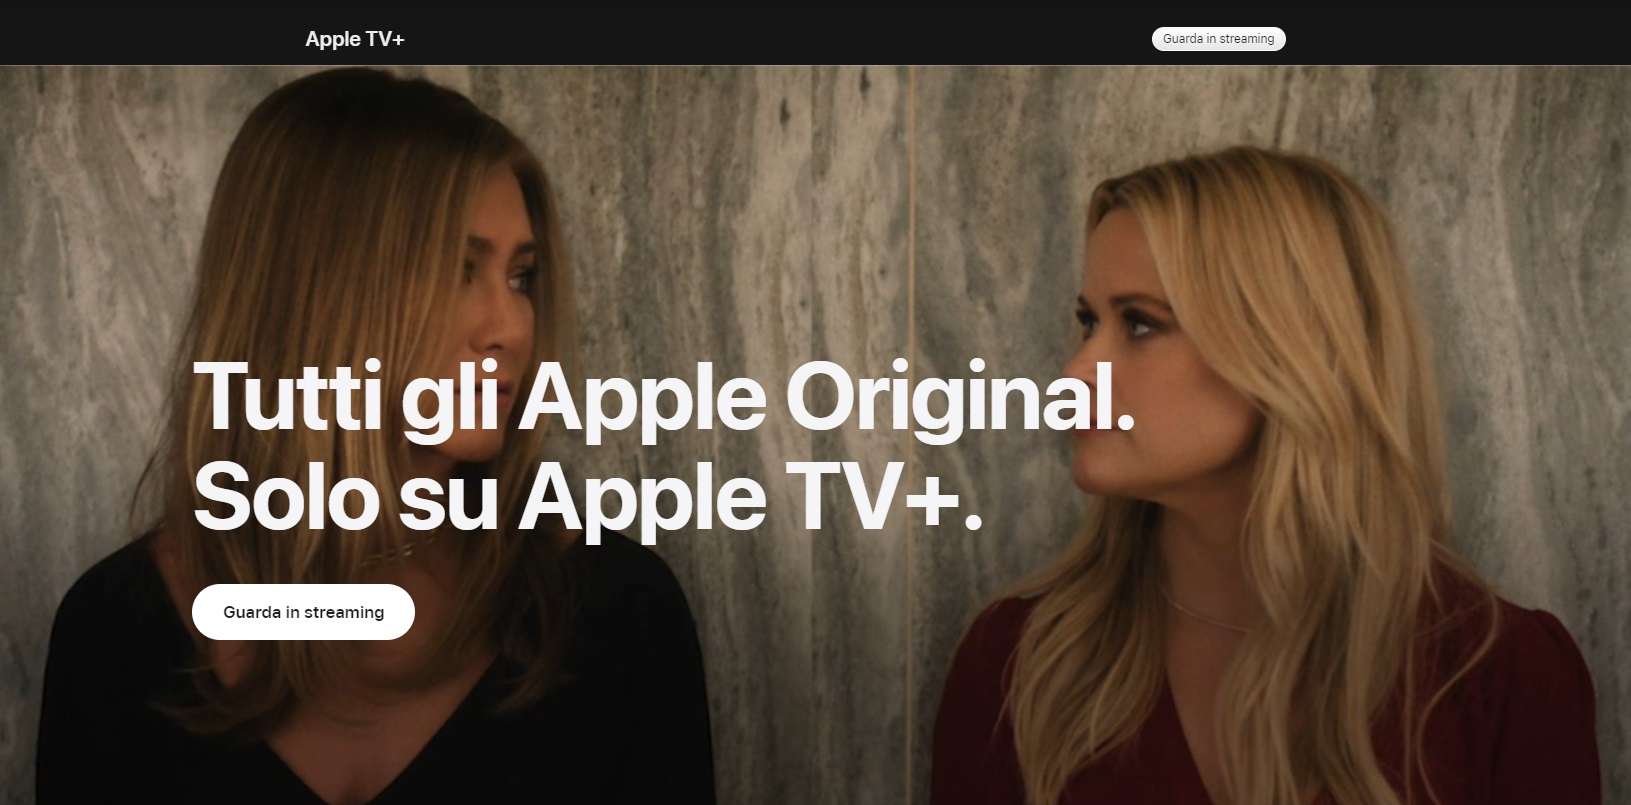 Tutto il catalogo di Apple TV+ gratis per 3 mesi con QUEST'OFFERTA